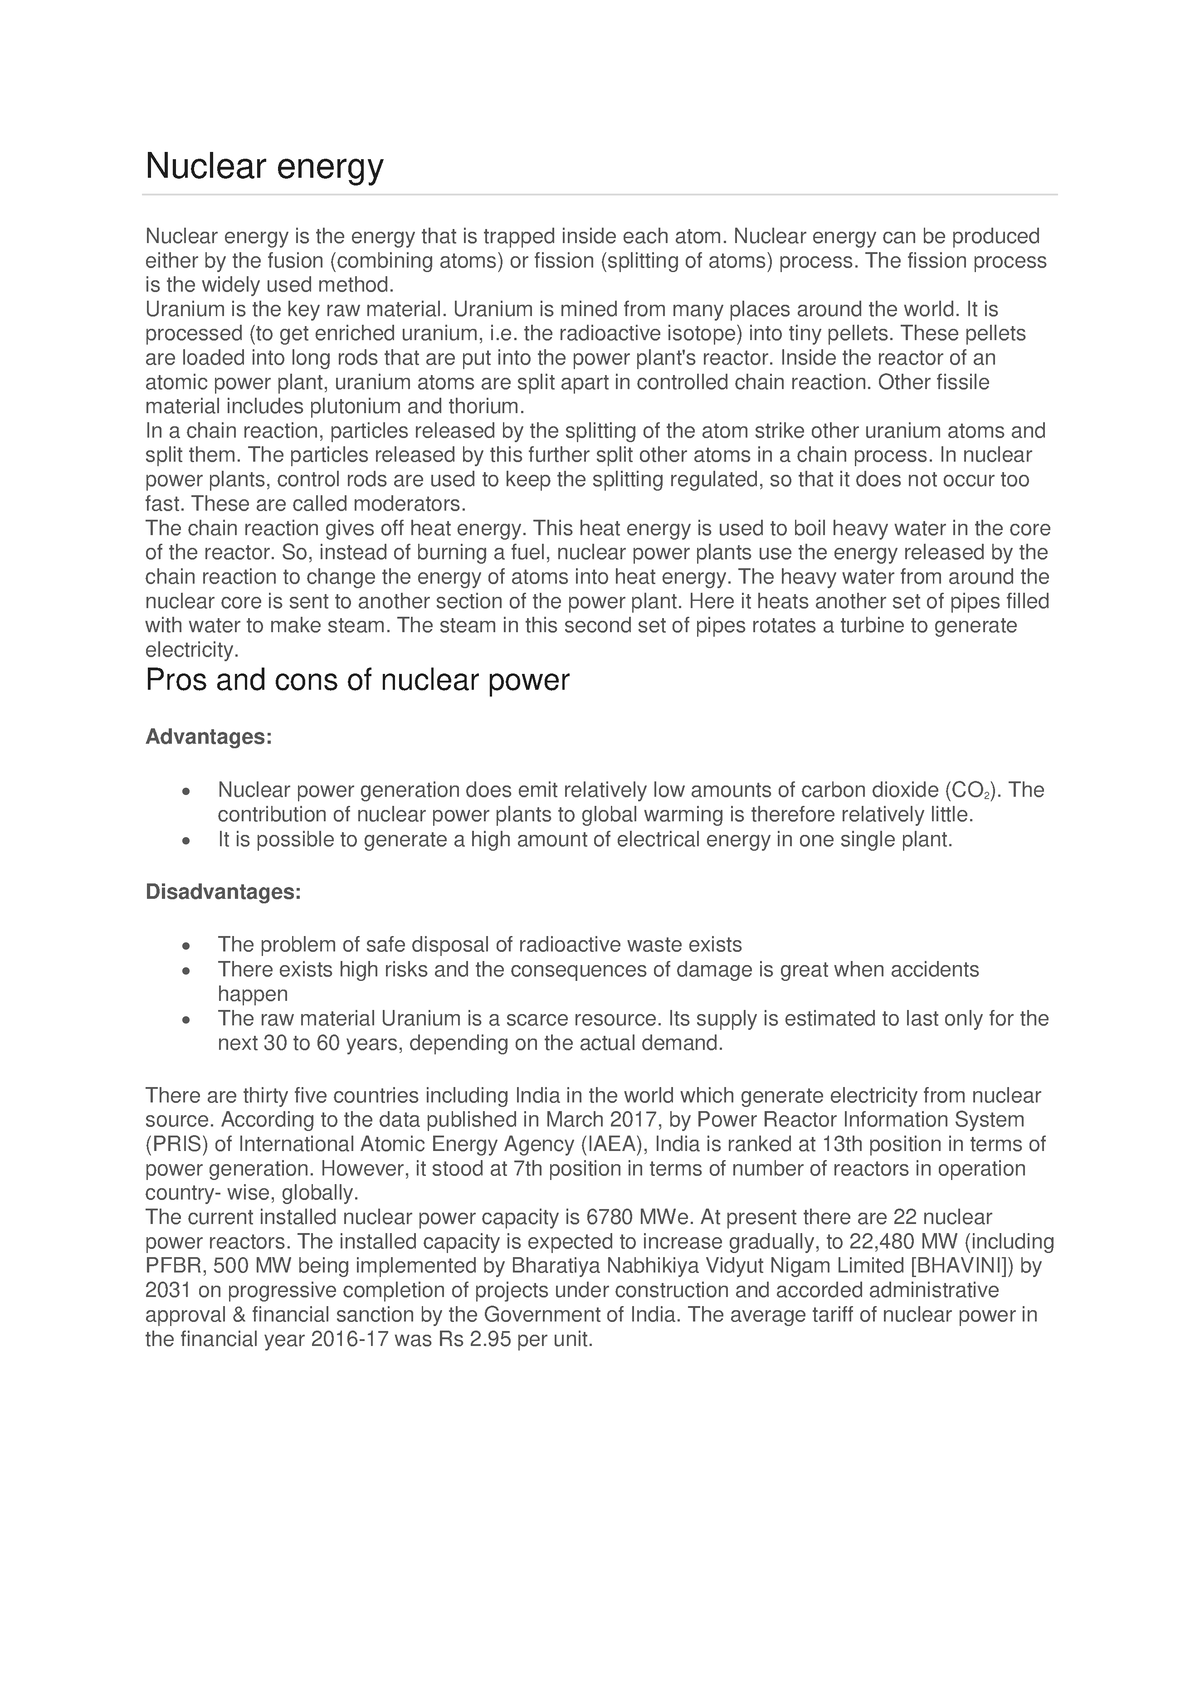 essays on nuclear energy